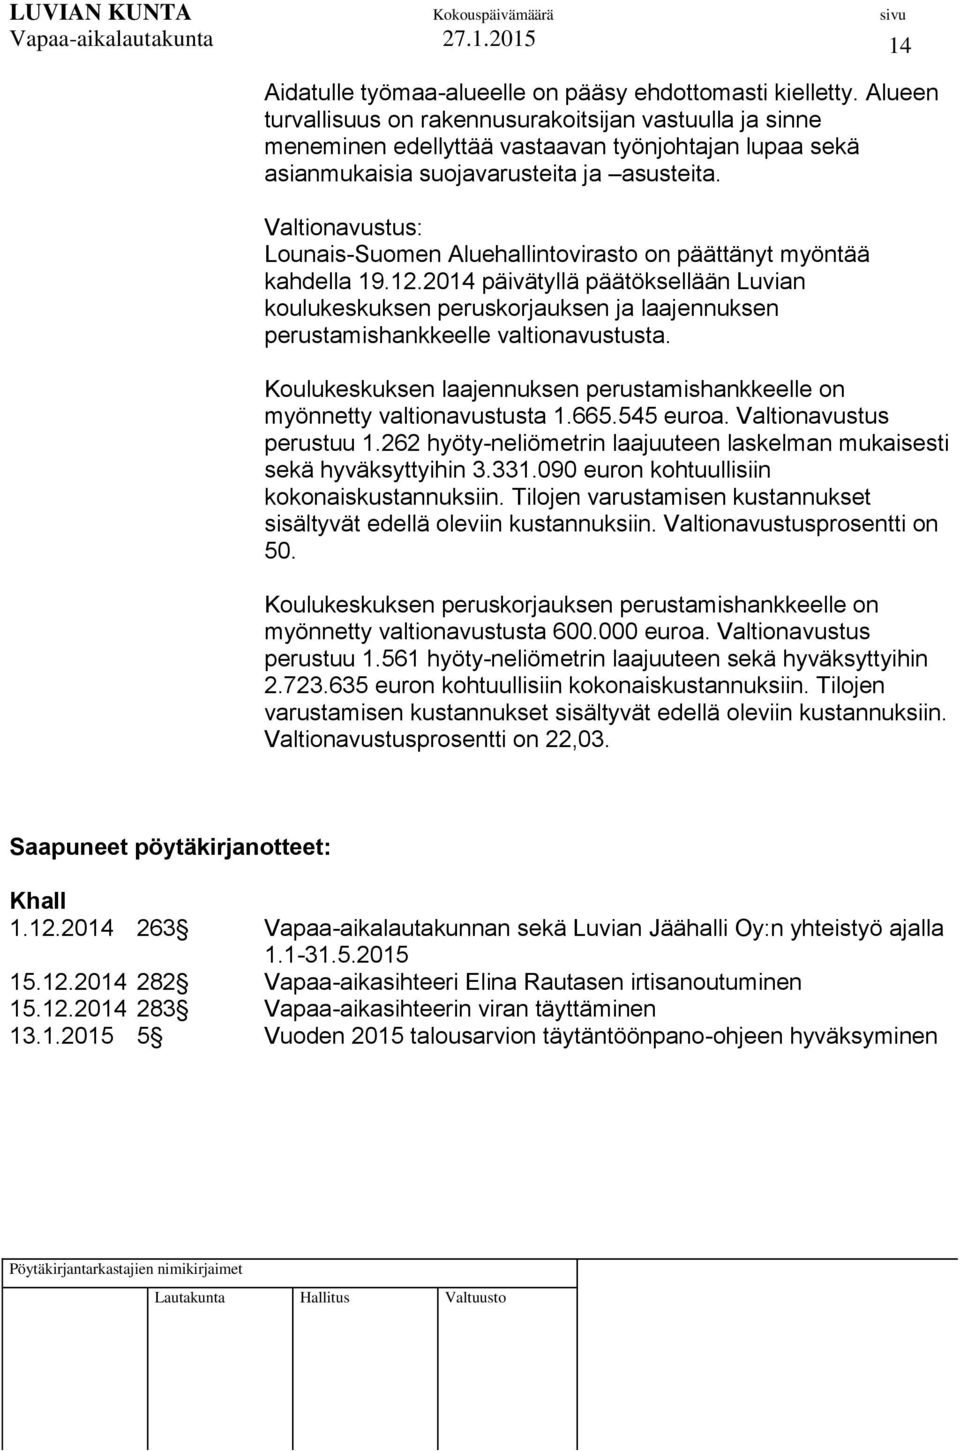 Valtionavustus: Lounais-Suomen Aluehallintovirasto on päättänyt myöntää kahdella 19.12.